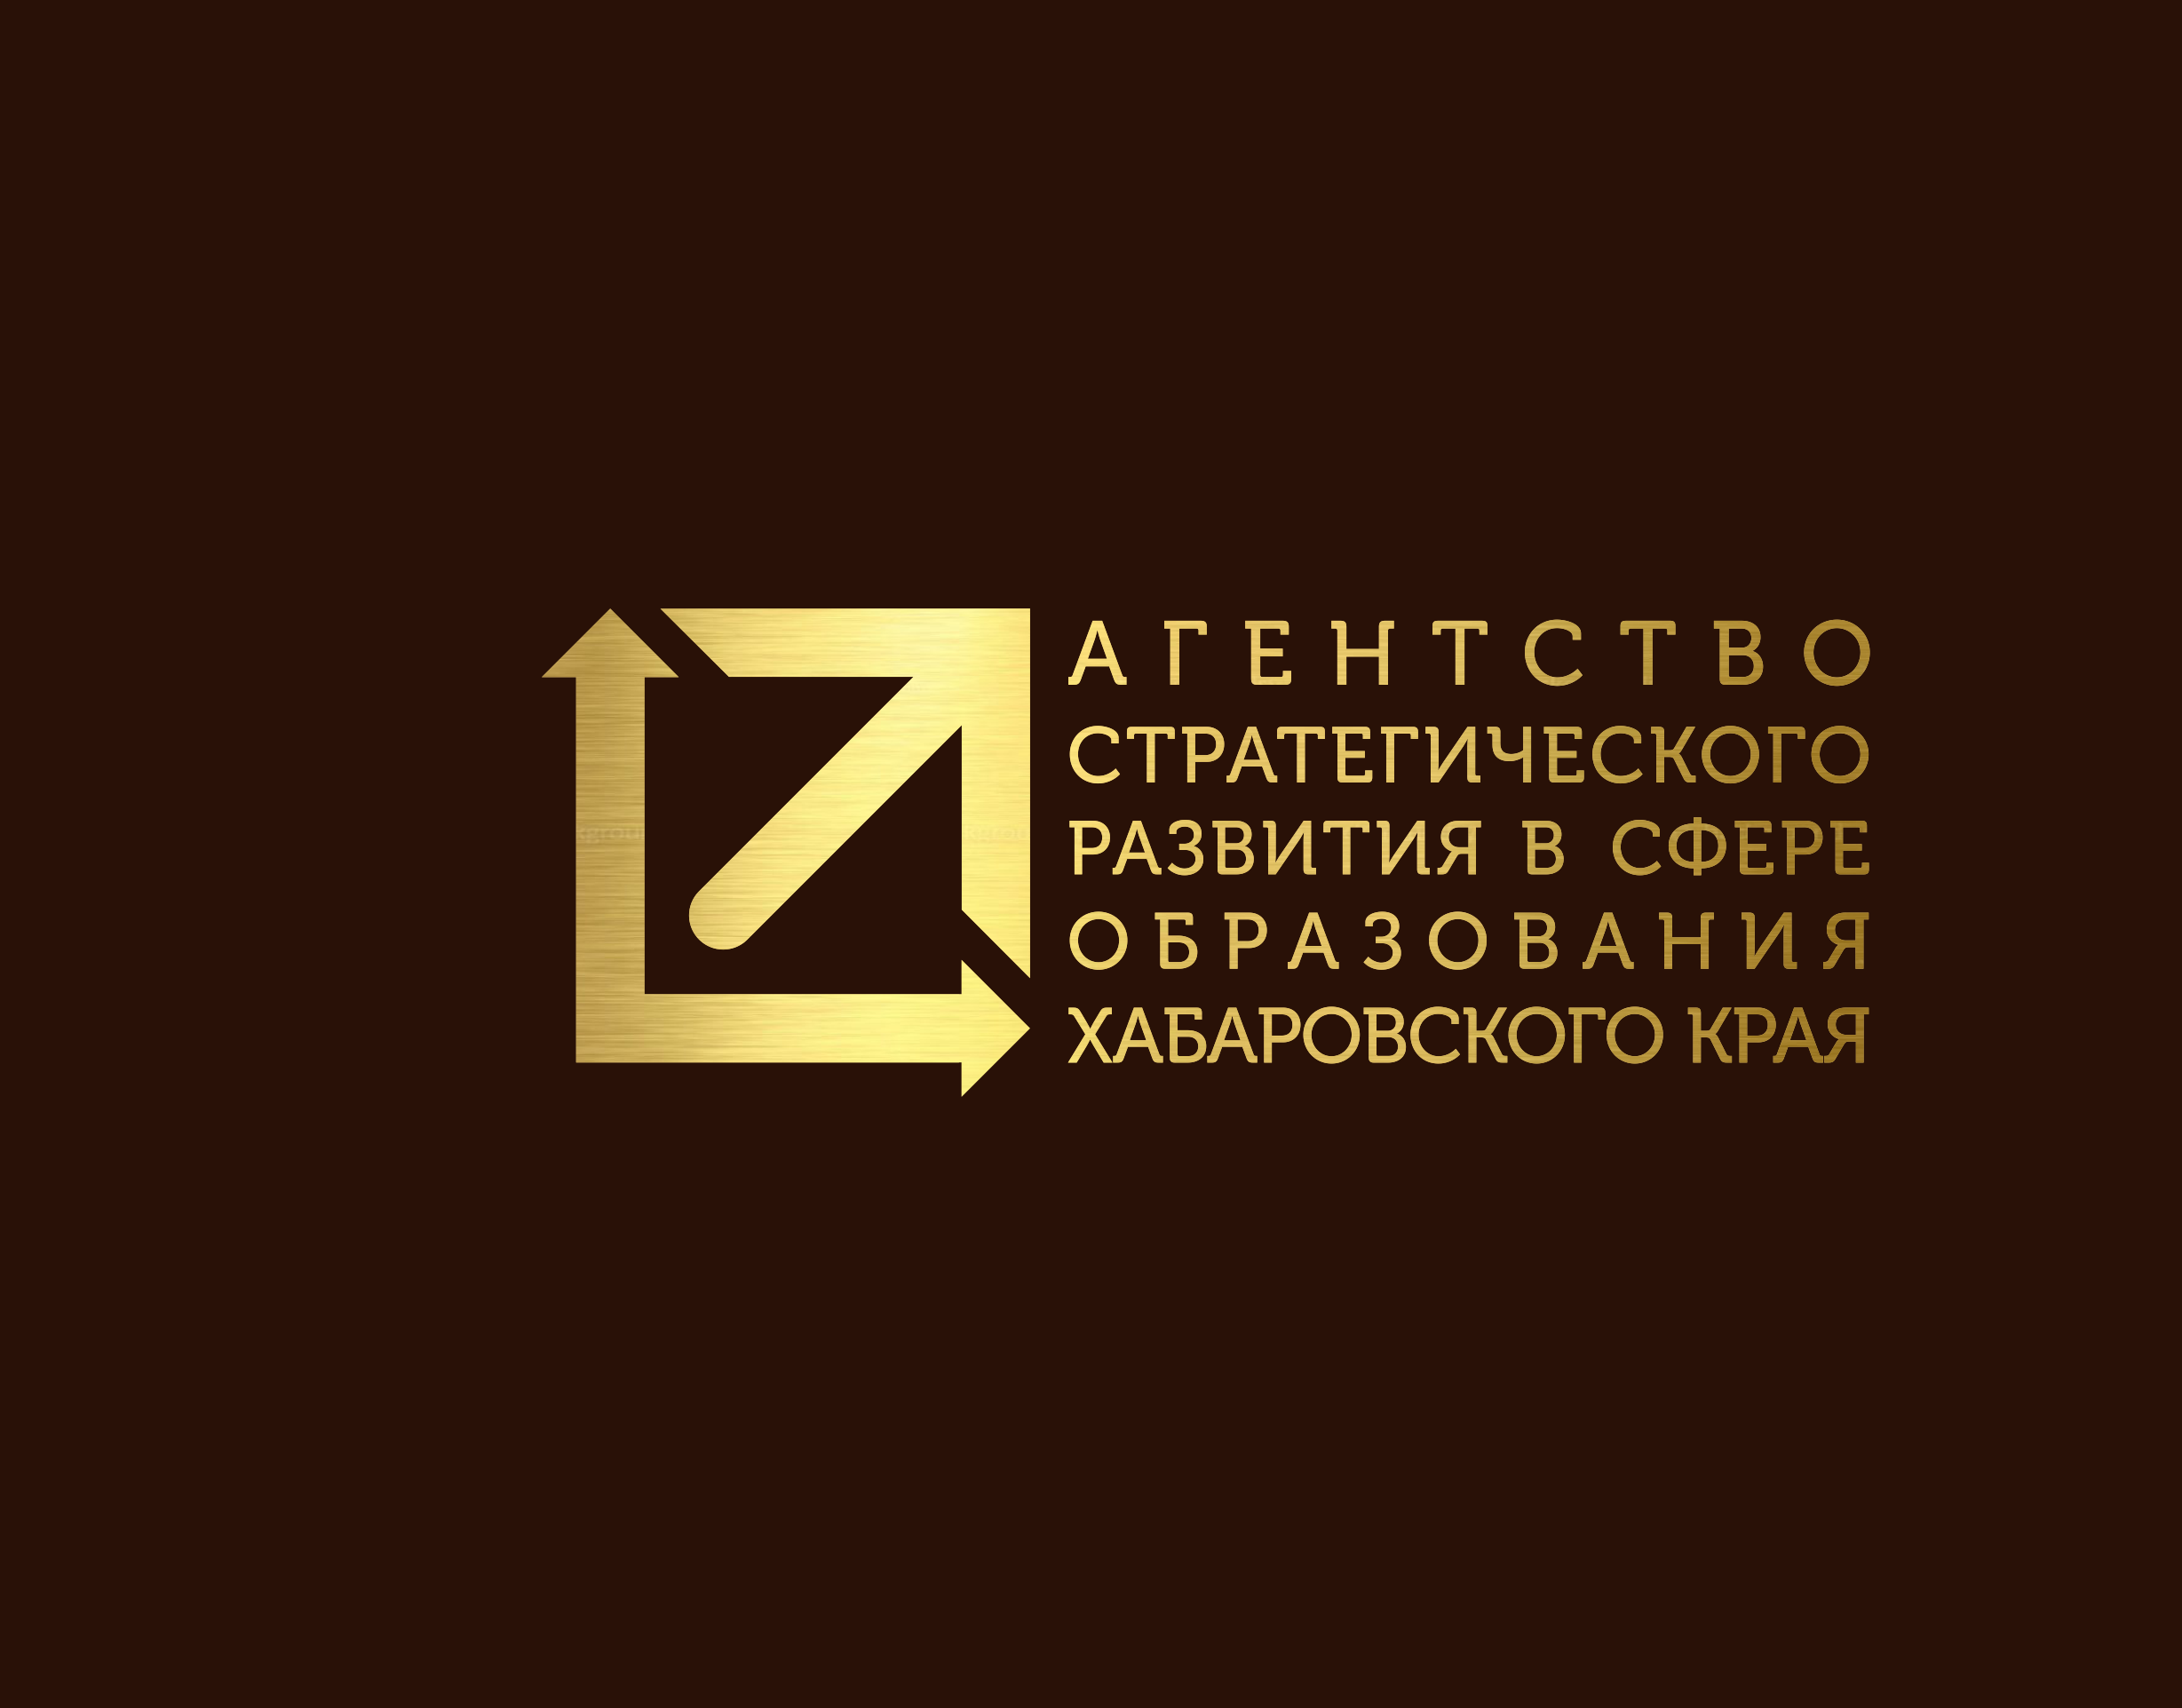 Сайт хк иро хабаровск. Агентство стратегического развития. Центр агентство стратегического развития логотип.